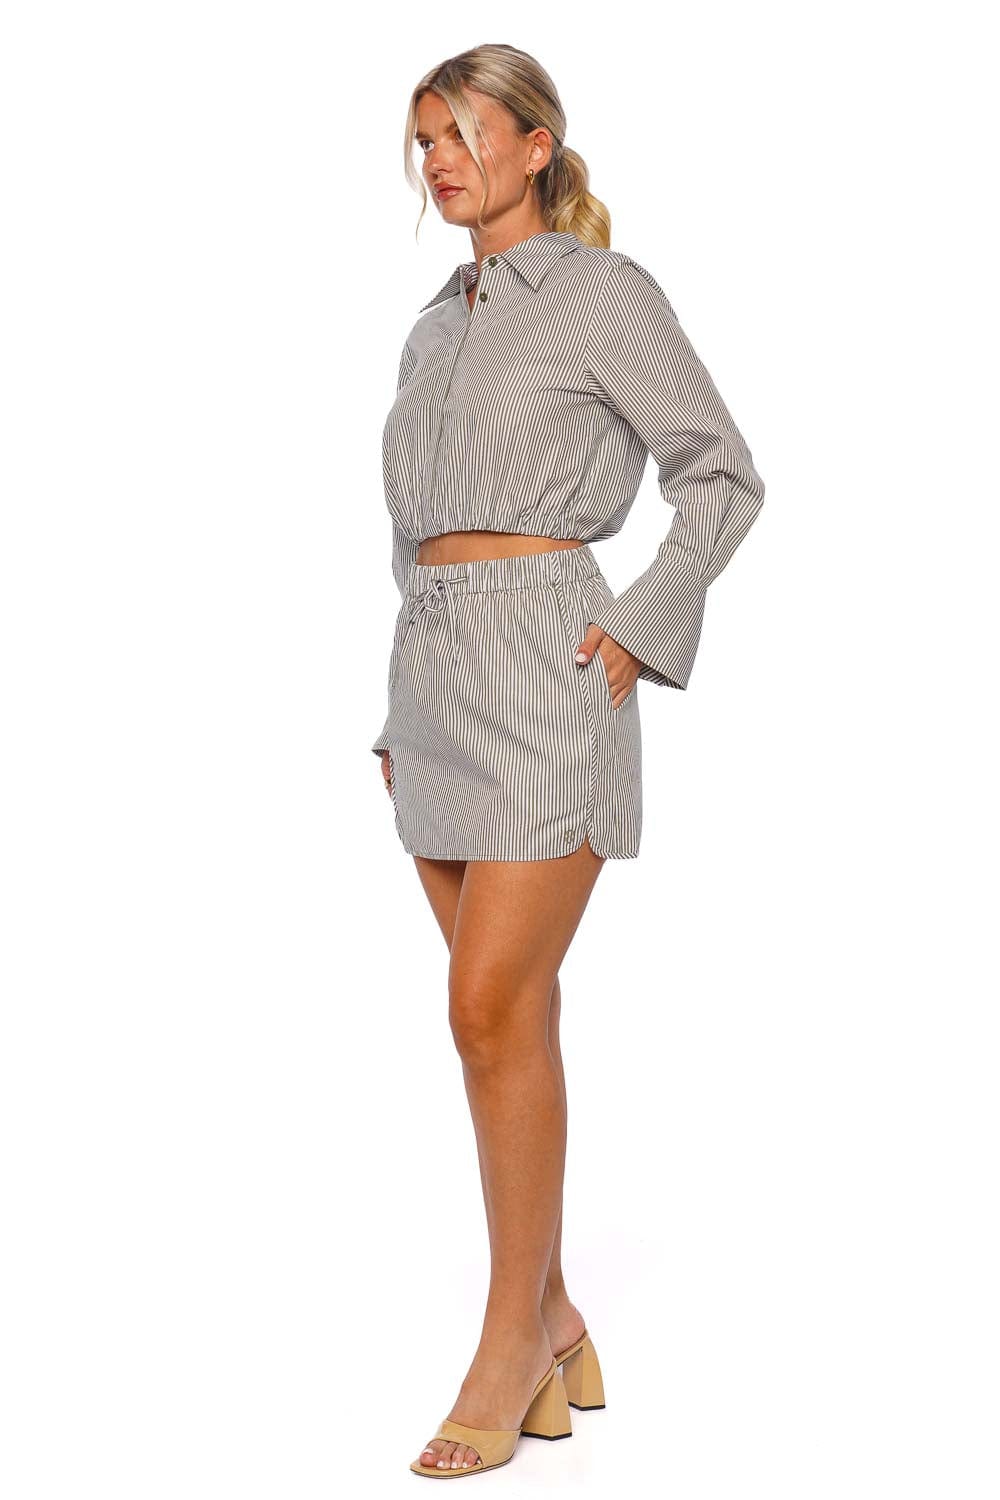 SIMKHAI Shiori Striped Cotton Mini Skirt